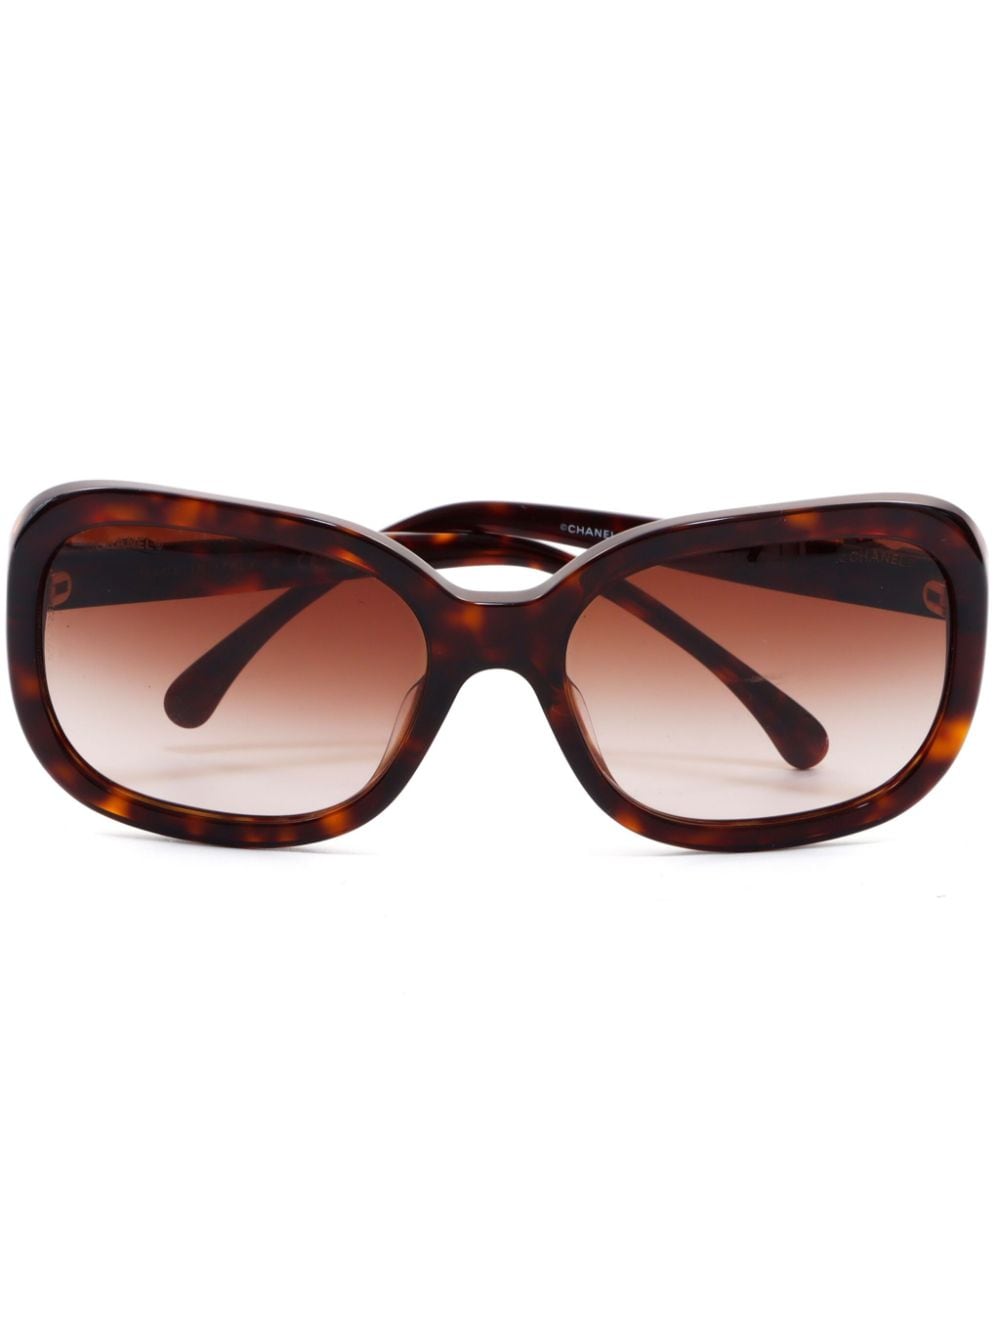 CHANEL Pre-Owned 2000s gradient lenses tortoiseshell sunglasses - Brown